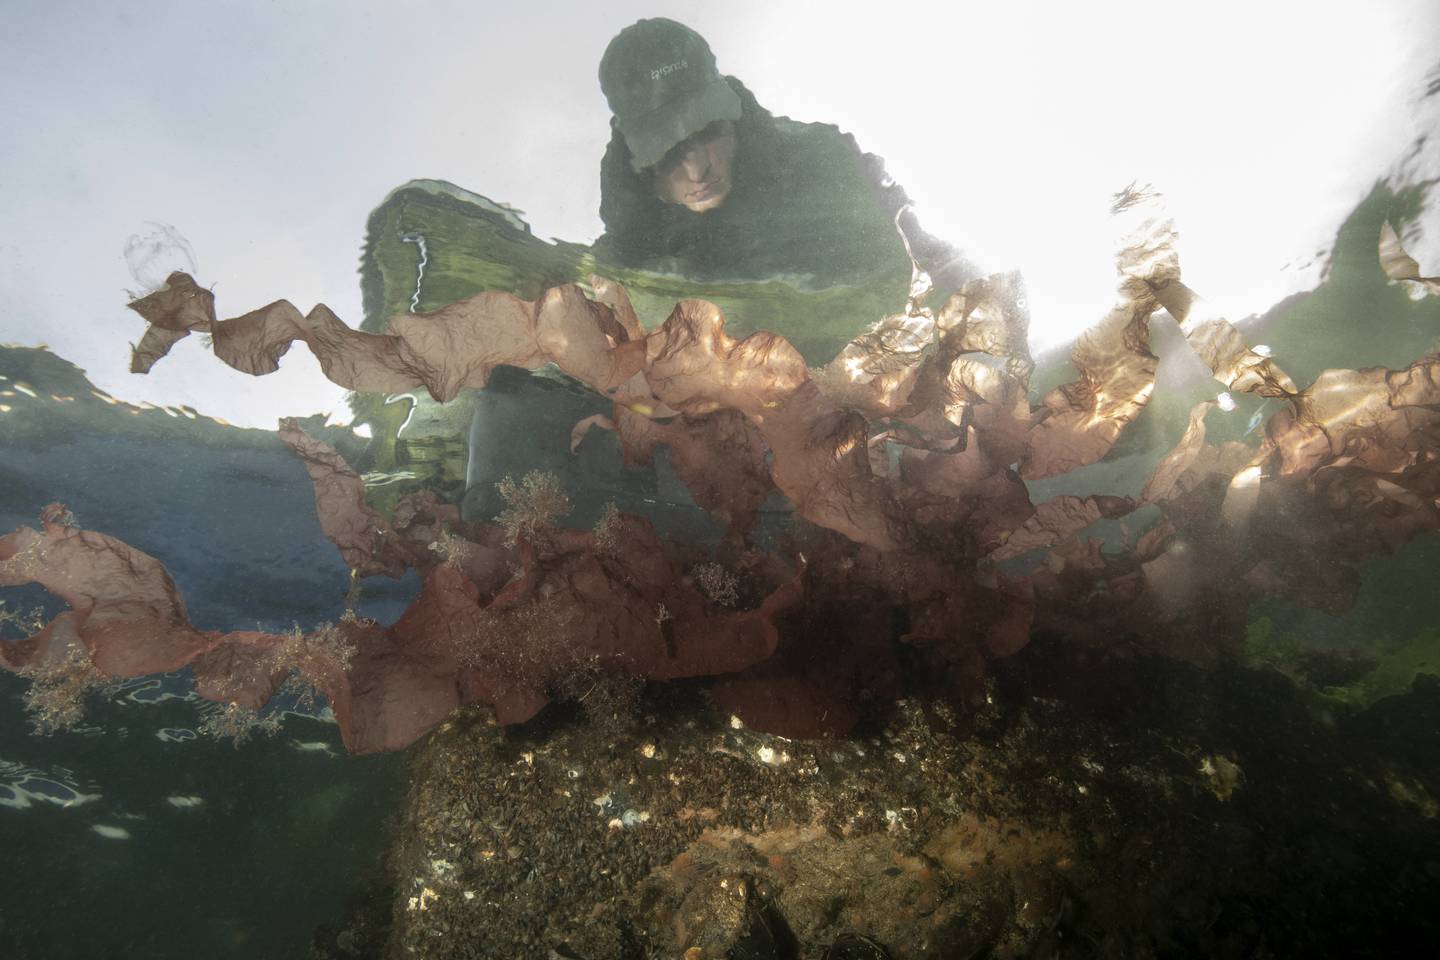 Djevletunge er en rødalge som kan bli opptil tre meter lang. I 2019 ble den for første gang funnet i Norge. Arten har ifølge Havforskningsinstituttet et «høyt invasjonspotensial» fordi den vokser raskt og sprer seg raskt fra sted til sted.